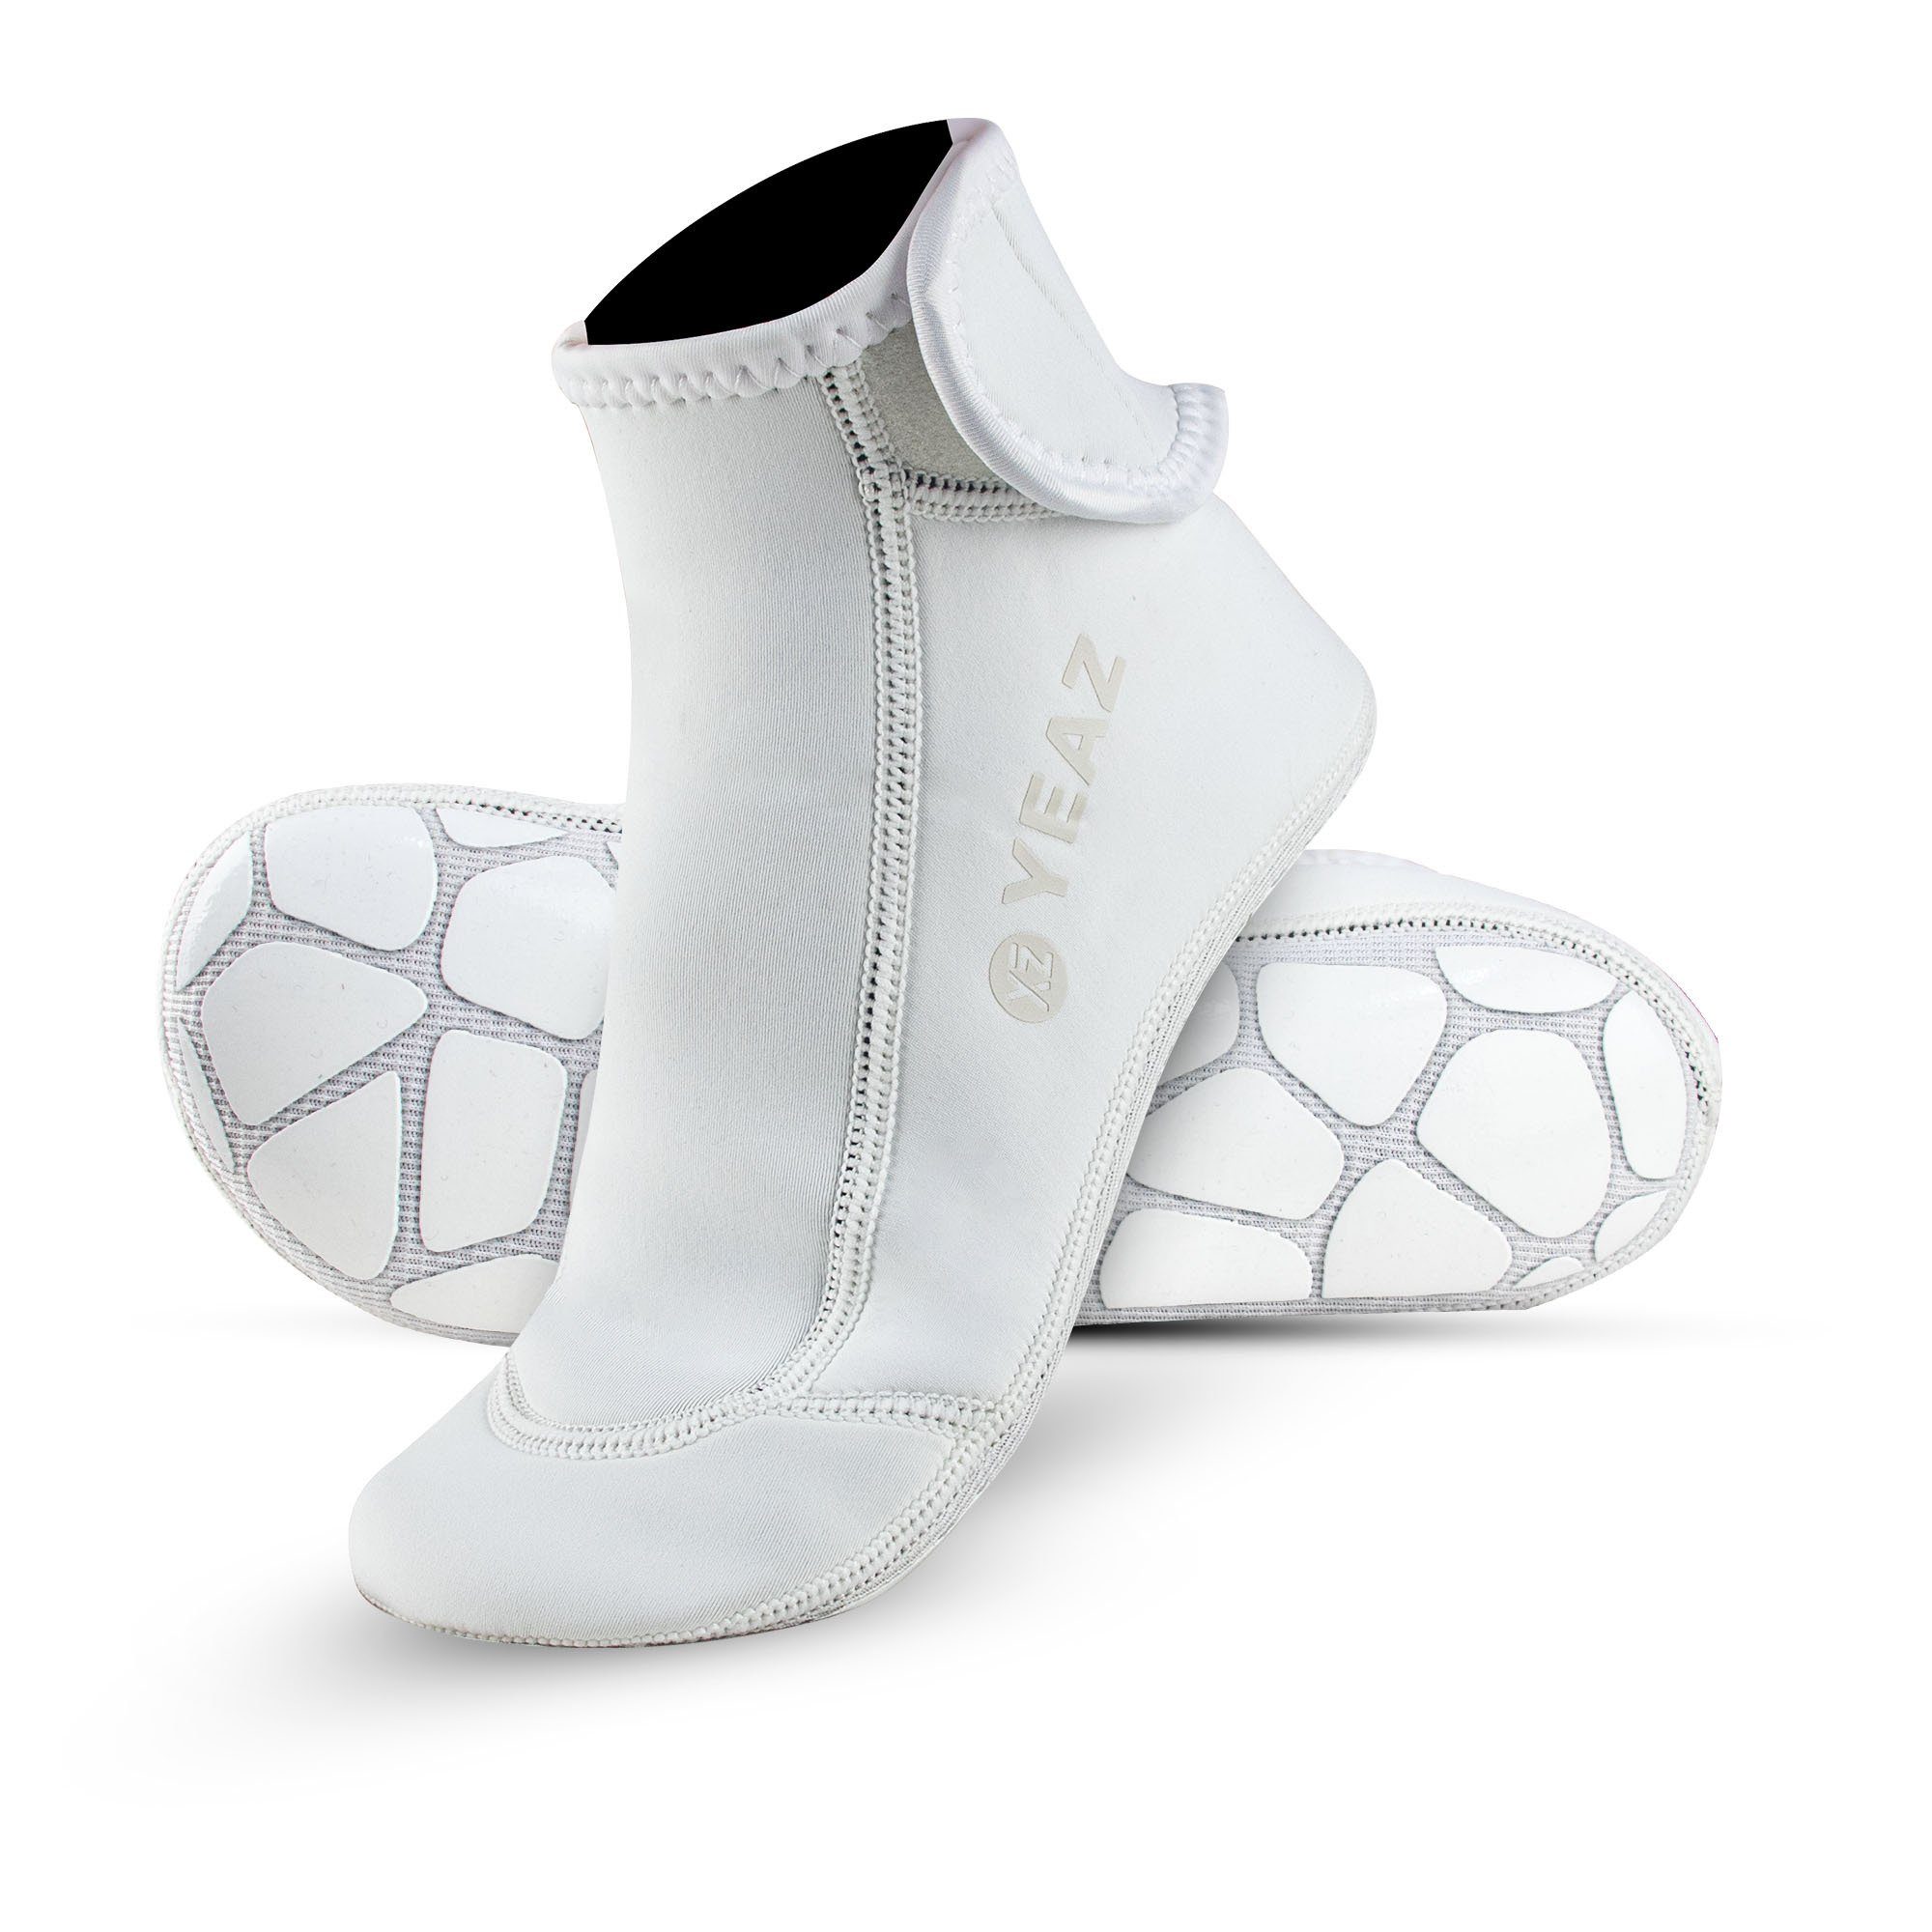 YEAZ Неопренові шкарпетки NEOSOCK GRIP PRO neoprensocken Ideal für Wassersport / Outdoor-Aktivitäten